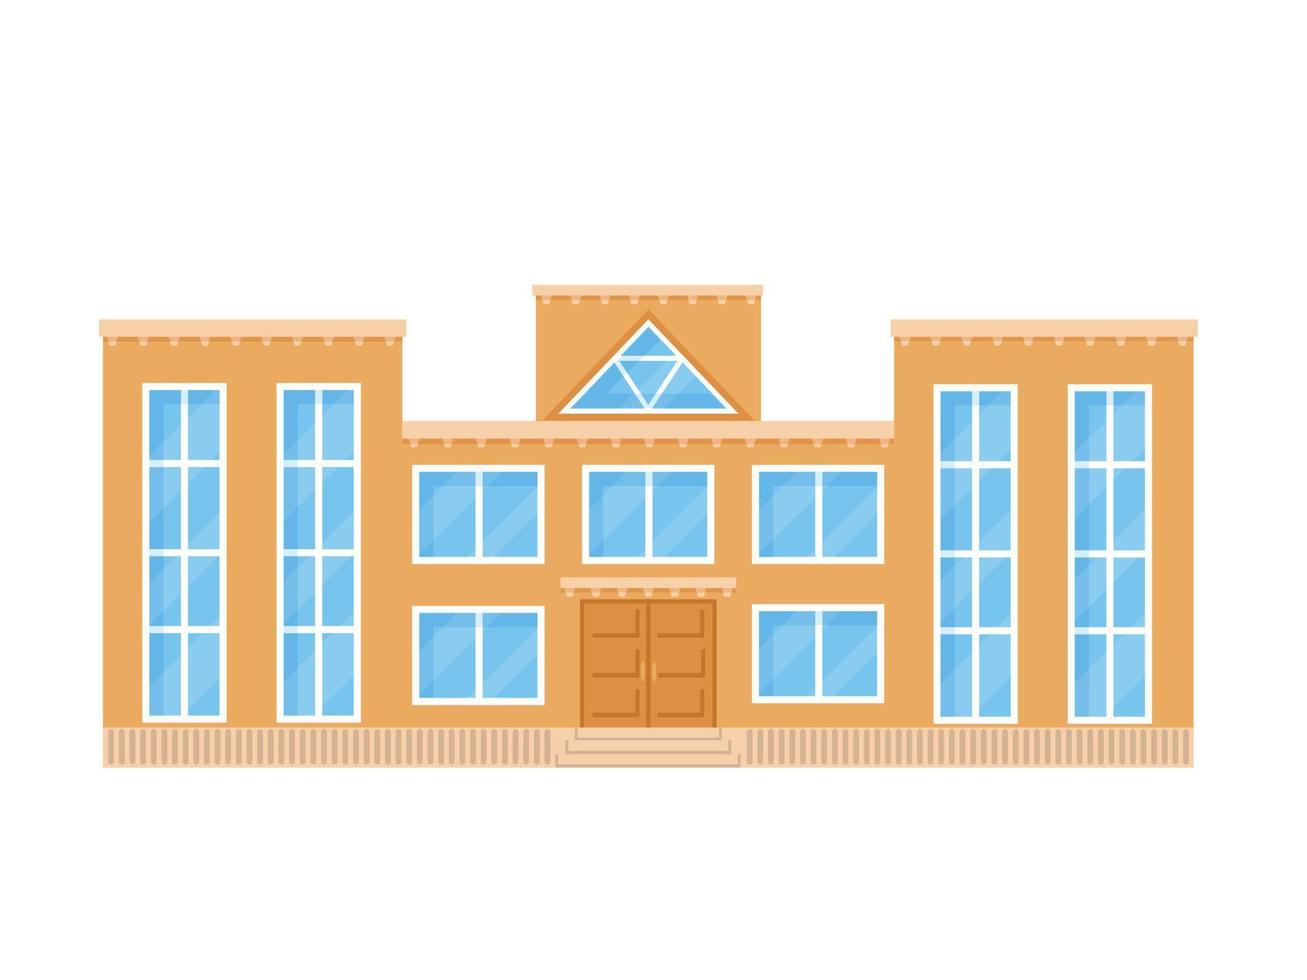 bâtiment scolaire de style plat. illustration vectorielle isolée sur fond blanc. vecteur